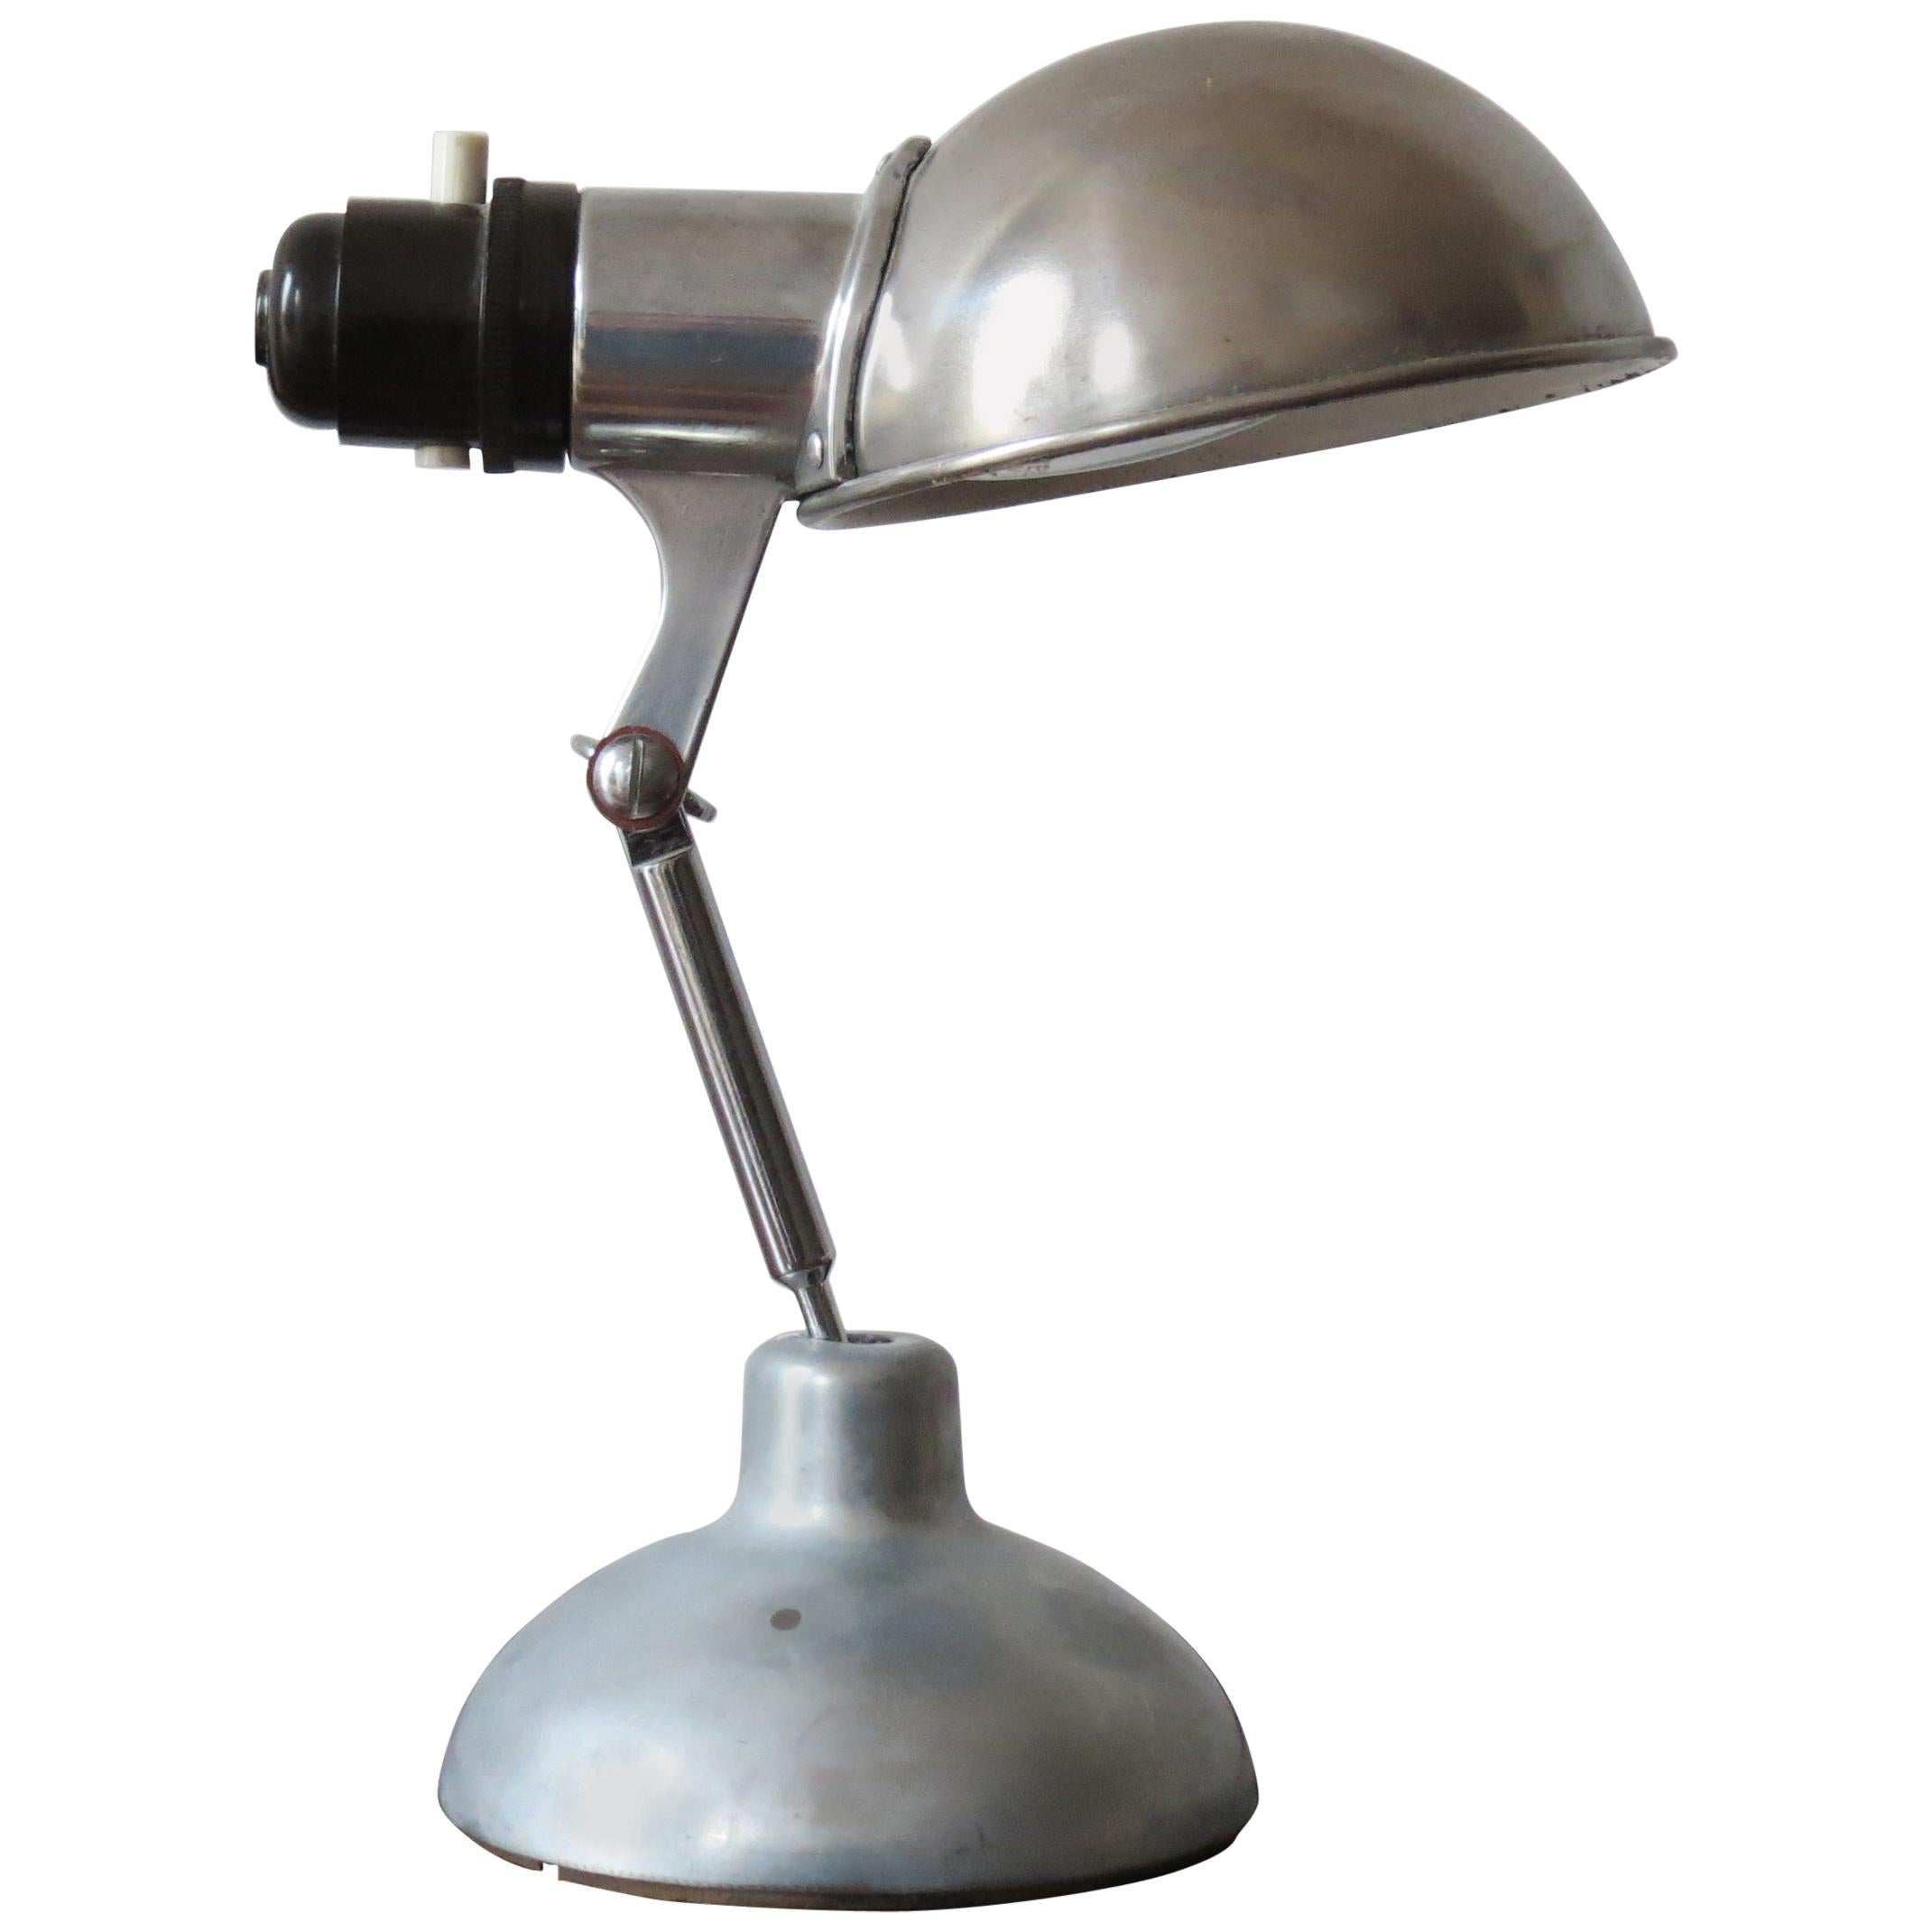 1950s Industrial Metek Metal Travelling Lamp Aluminium Folding Adjustable Lamp B